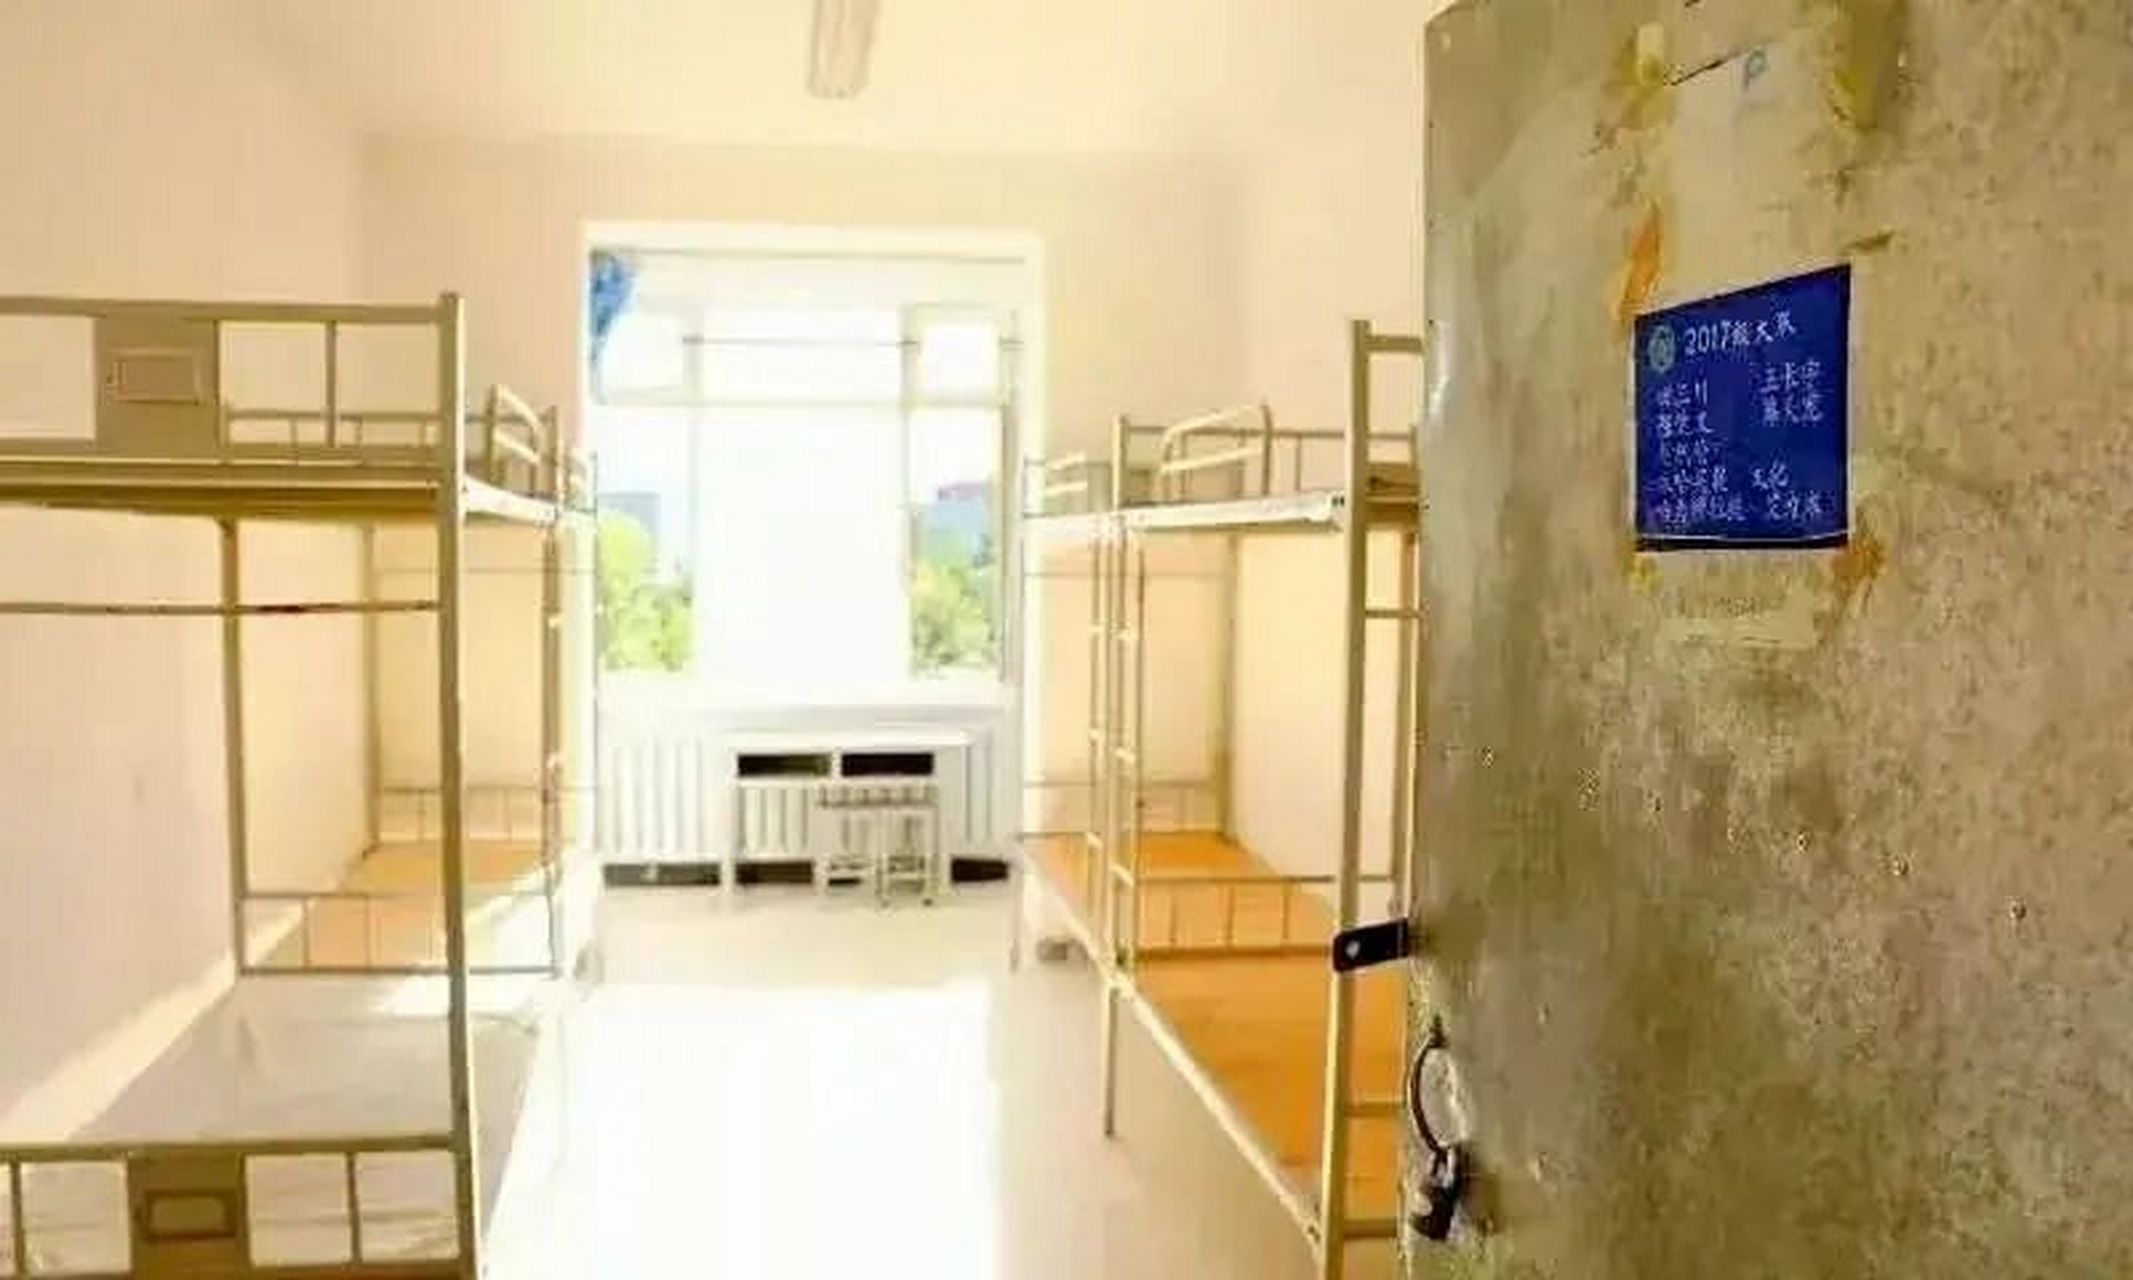 新疆警察学院宿舍图片